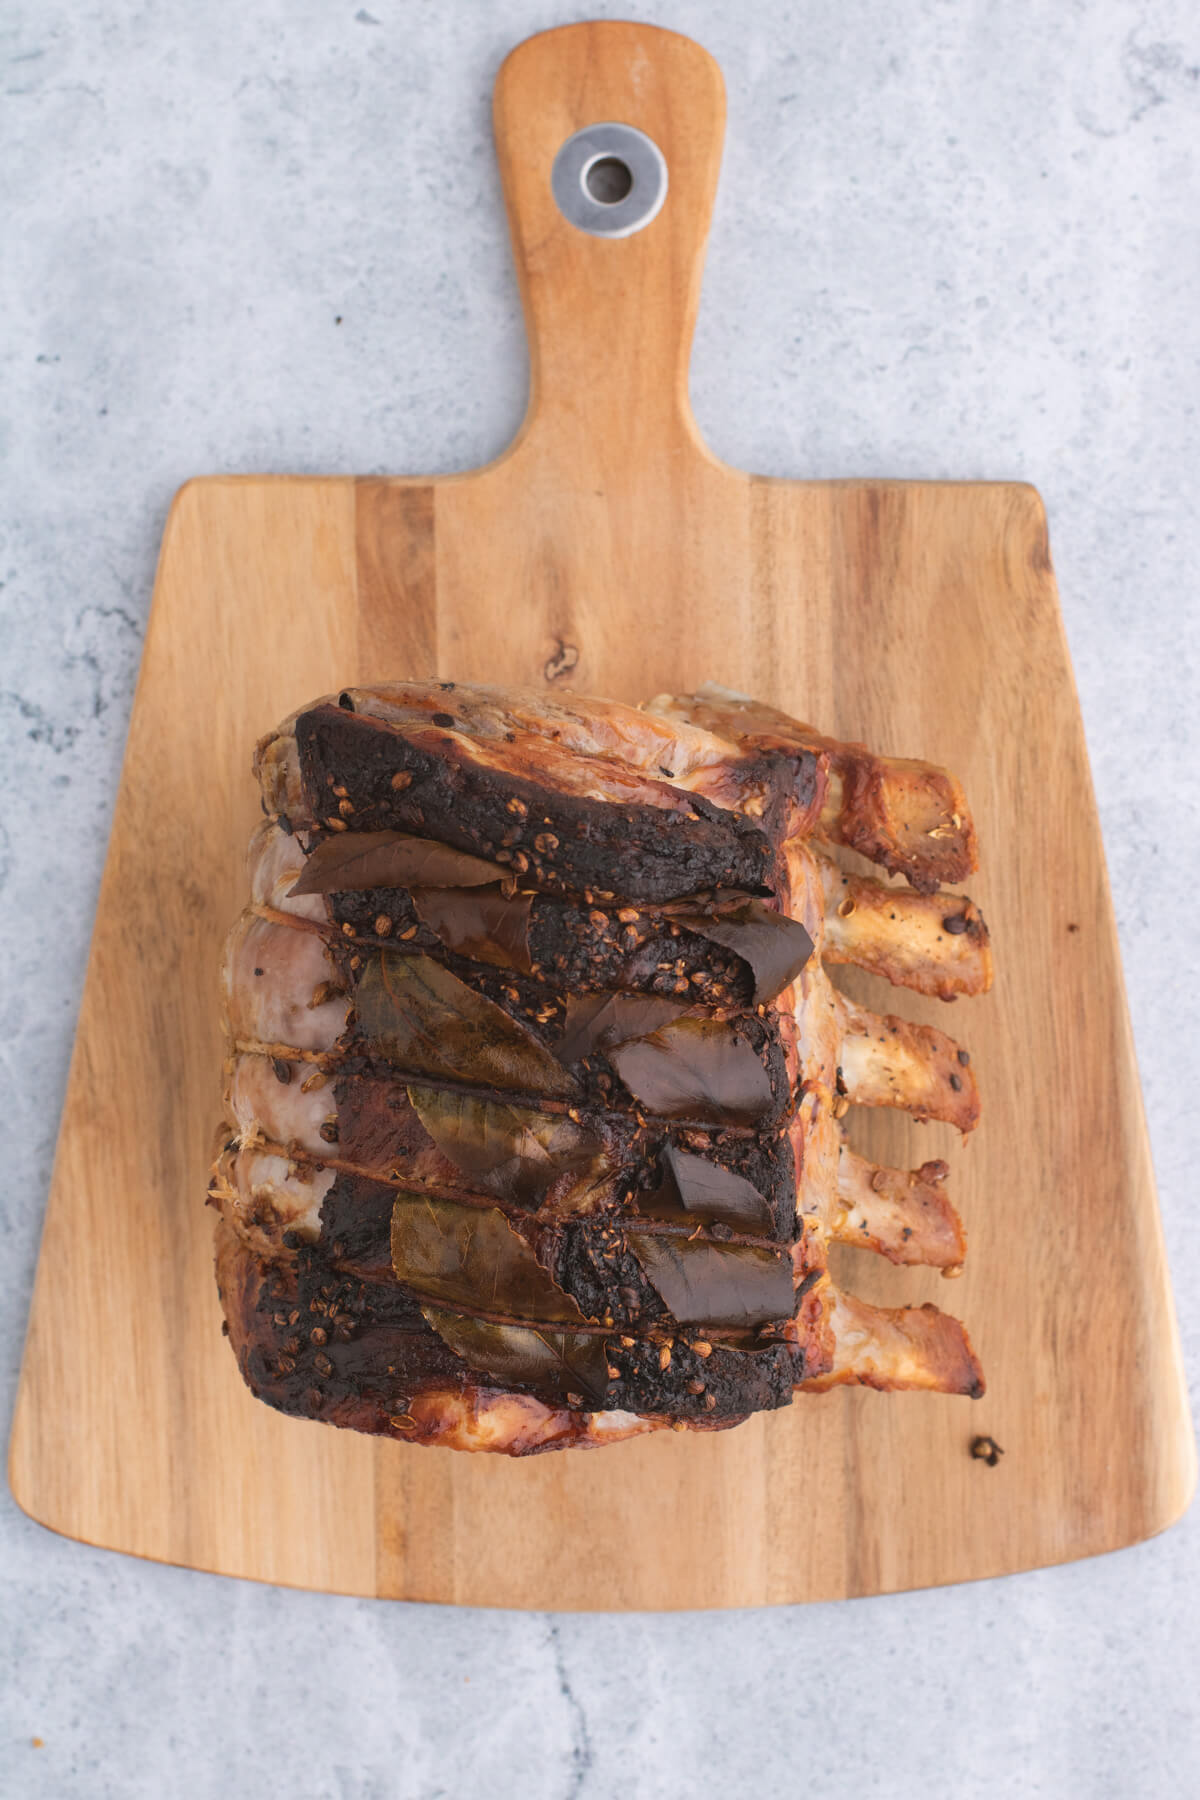 A whole roasted pork rib roast on a wooden cutting board.